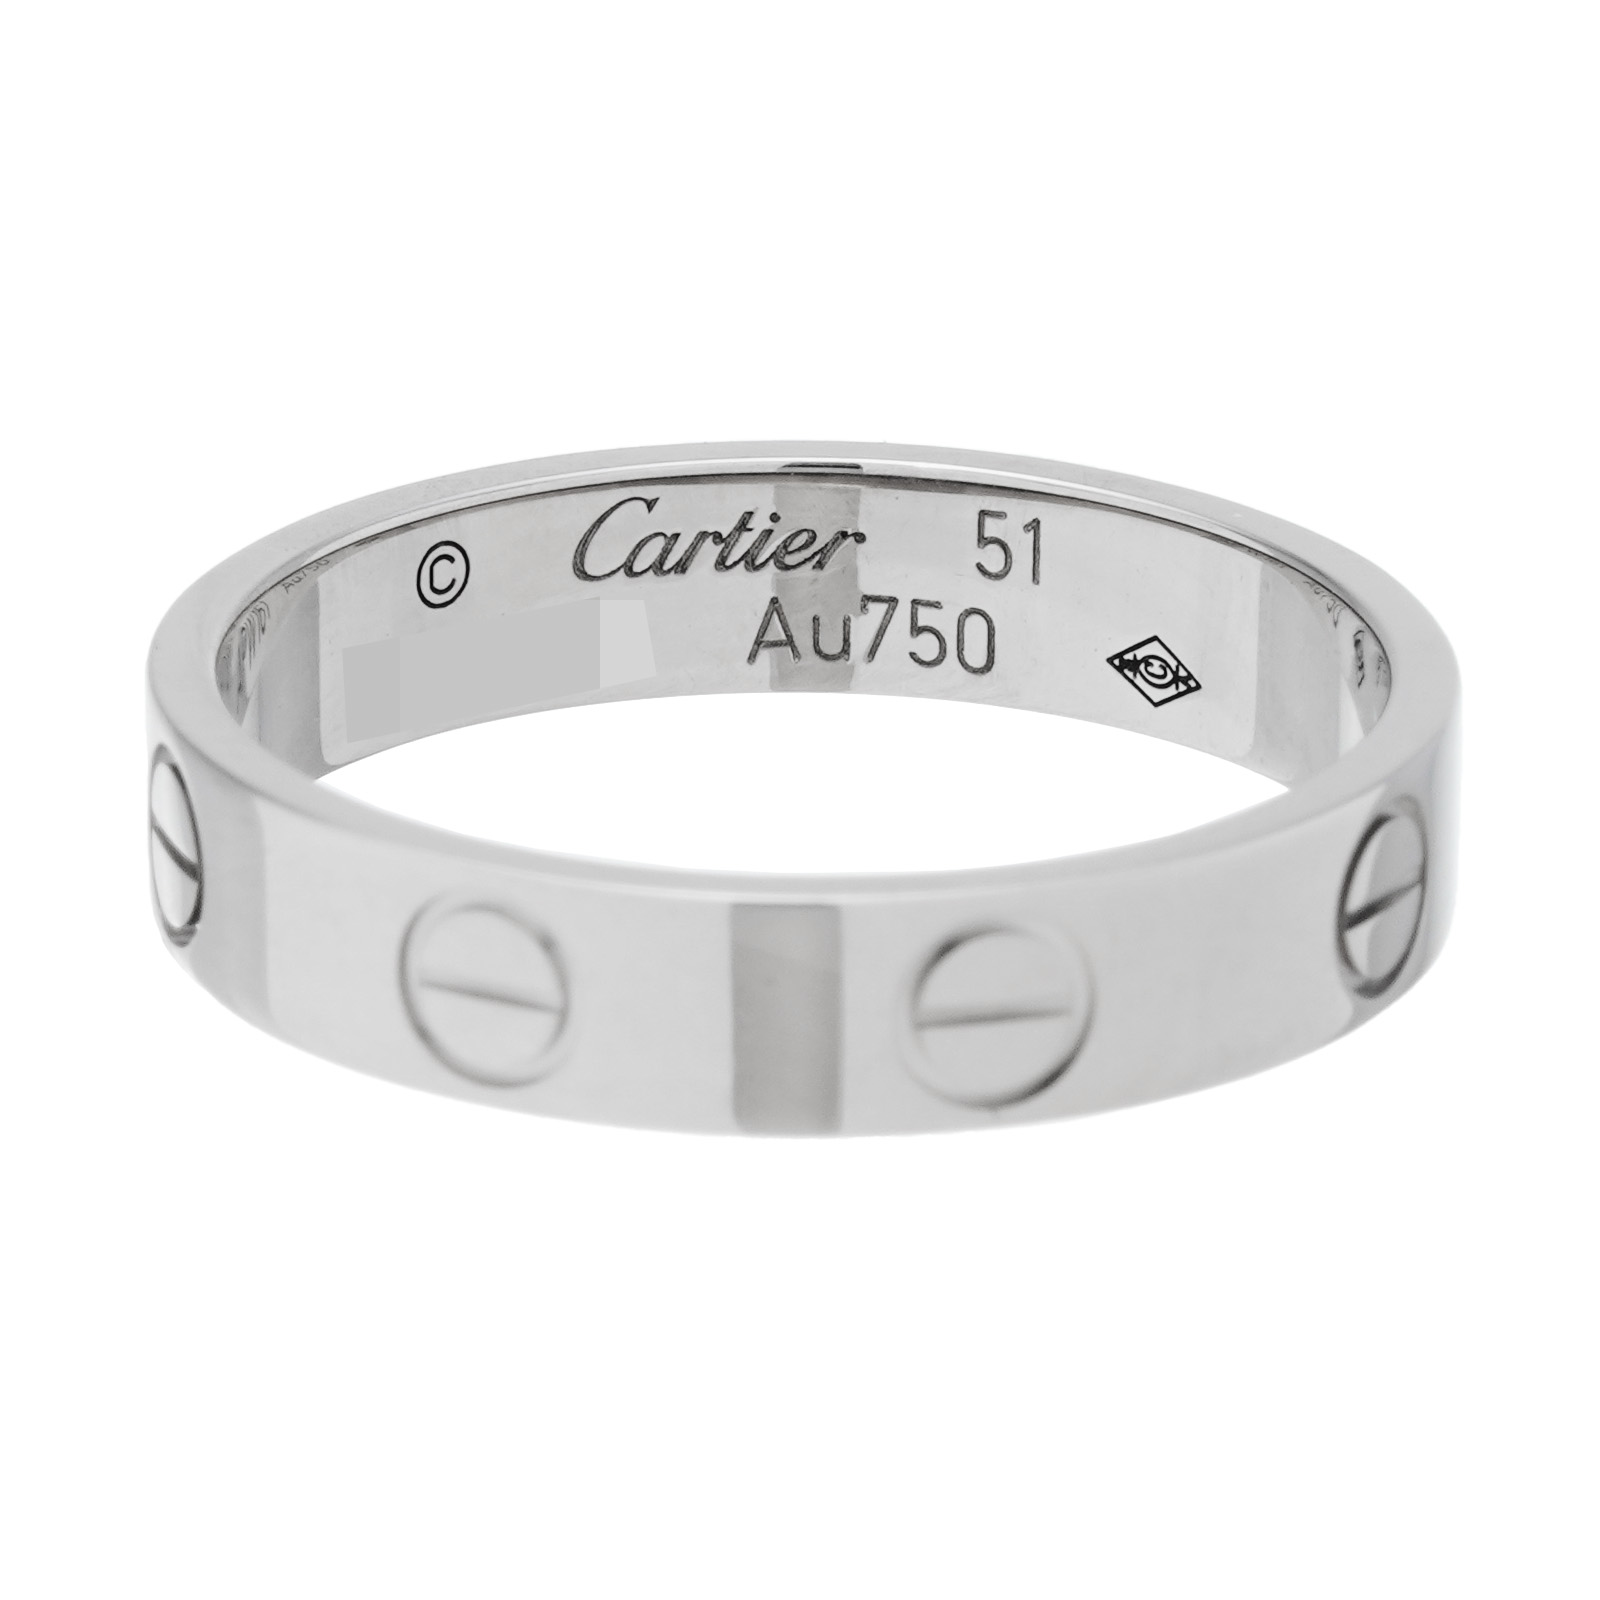 【正規品】【新古品】【新品仕上げ済み】 
Cartier カルティエ　
ミニラブ リング 1PD WG #51 　
約11号 ダイヤモンド 　
K18 ホワイトゴールド　
【買蔵】